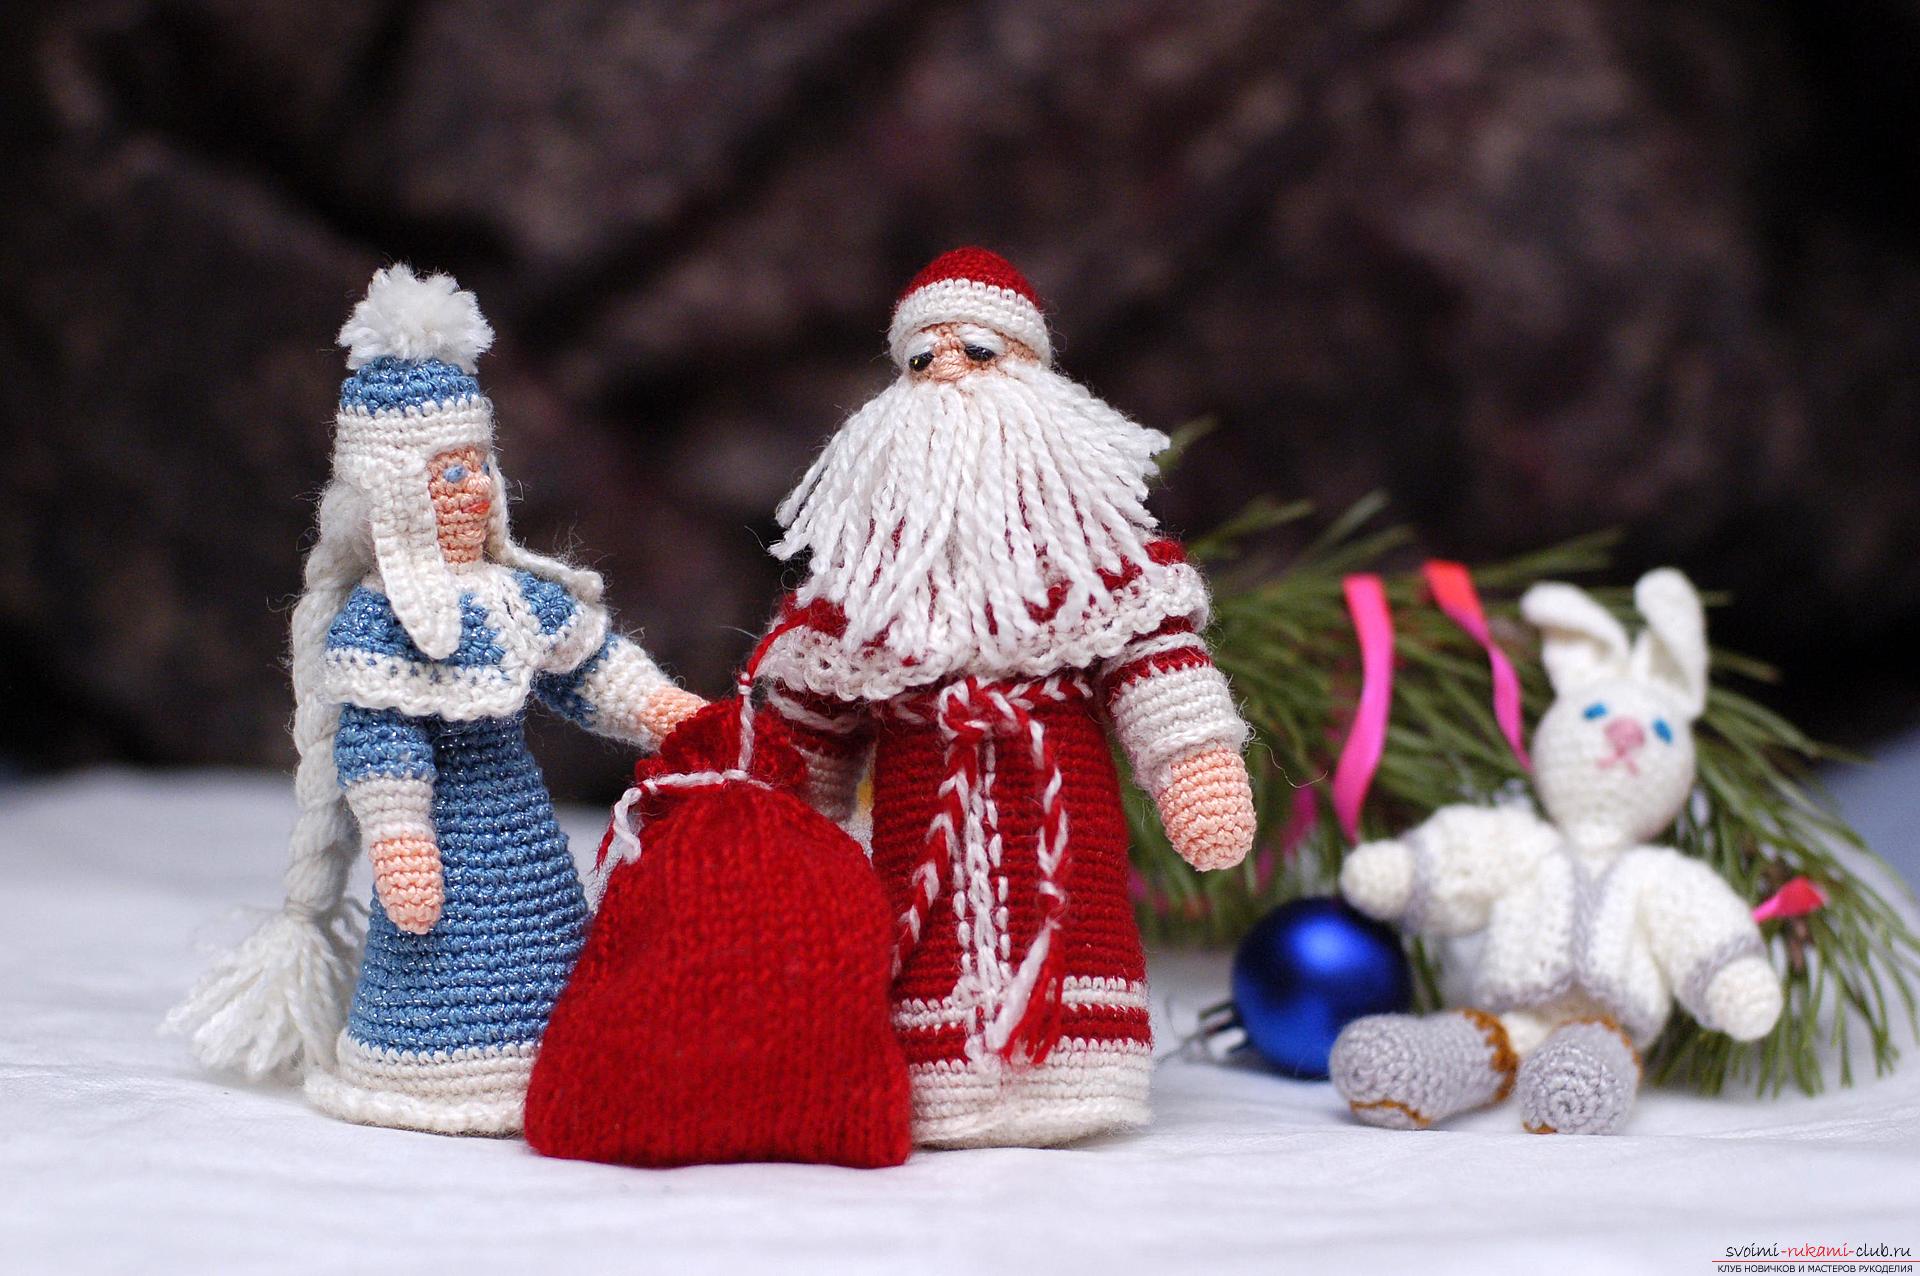 Мастер-класс посвящен новогодней поделке - Снегурочке - которую можно связать своими руками из ниток крючком. Фото №34